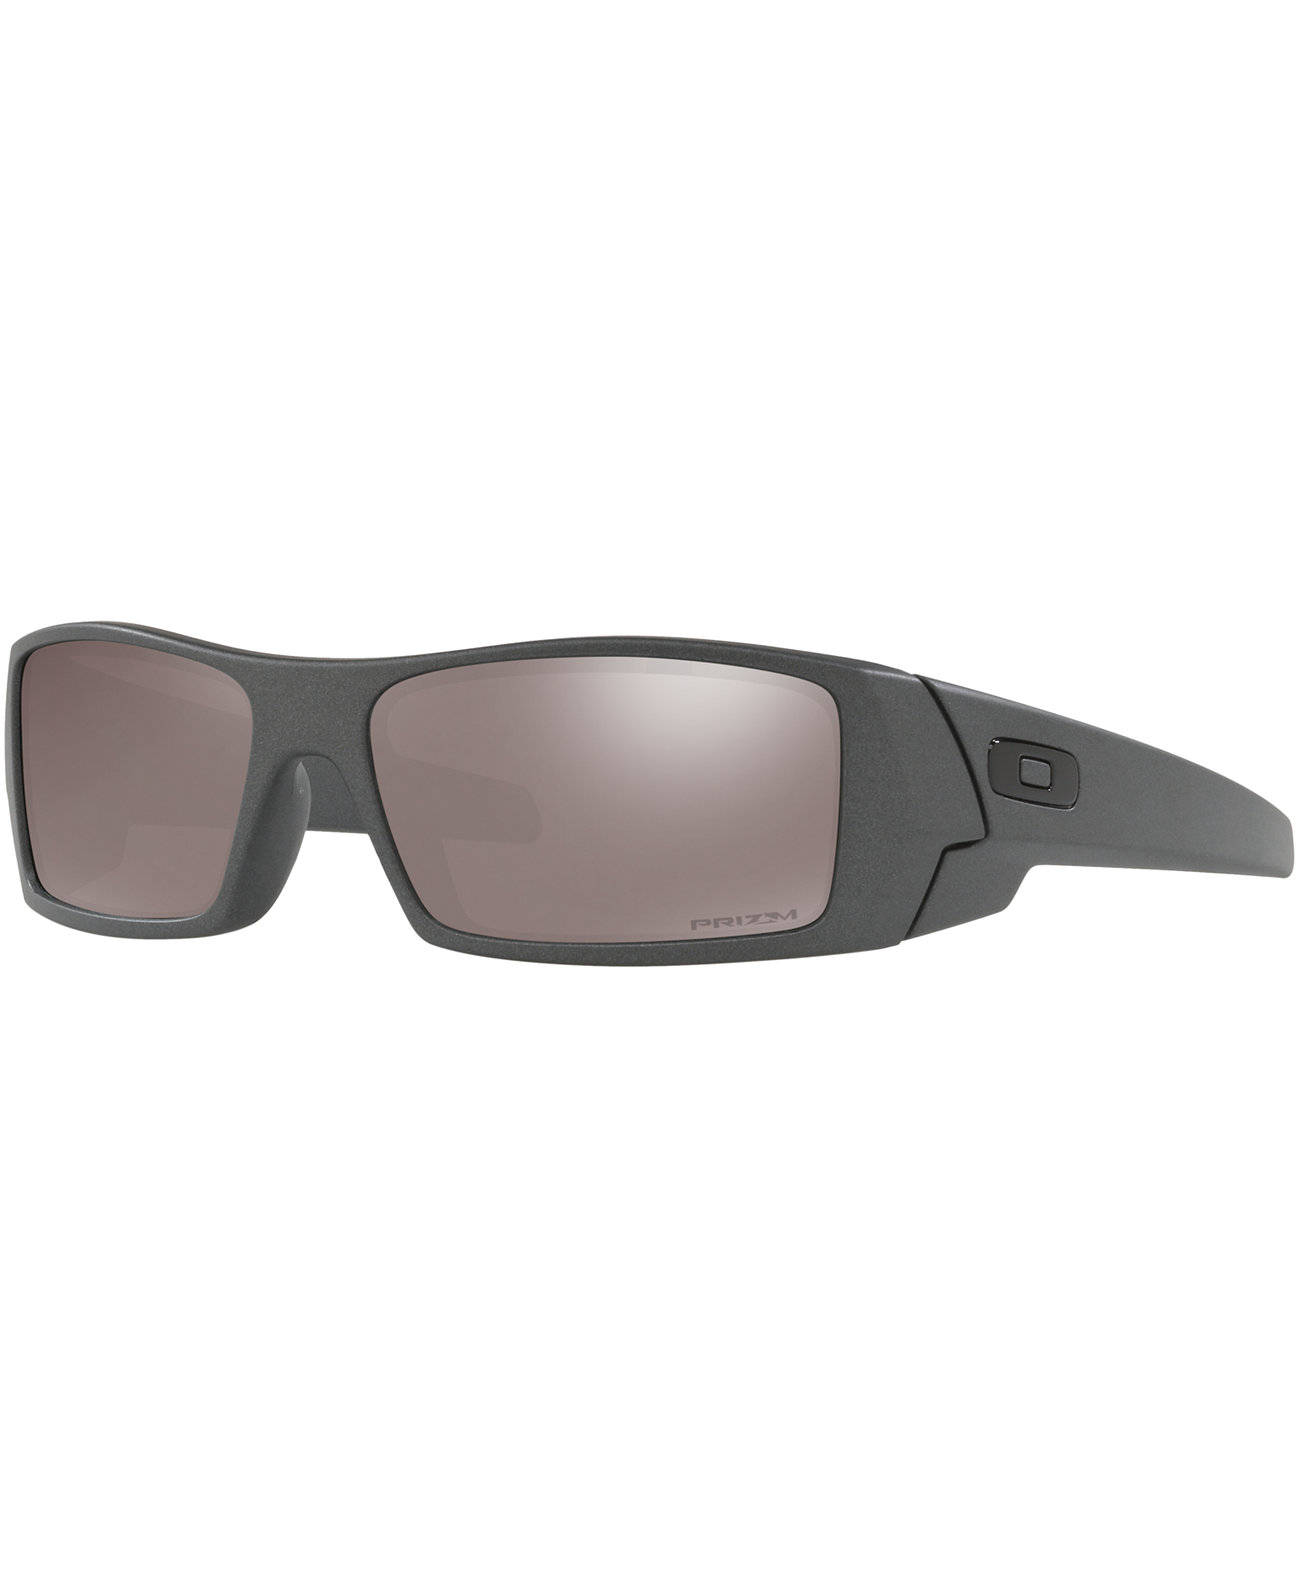 Поляризованные солнцезащитные очки Gascan Polarized, OO9014 Oakley